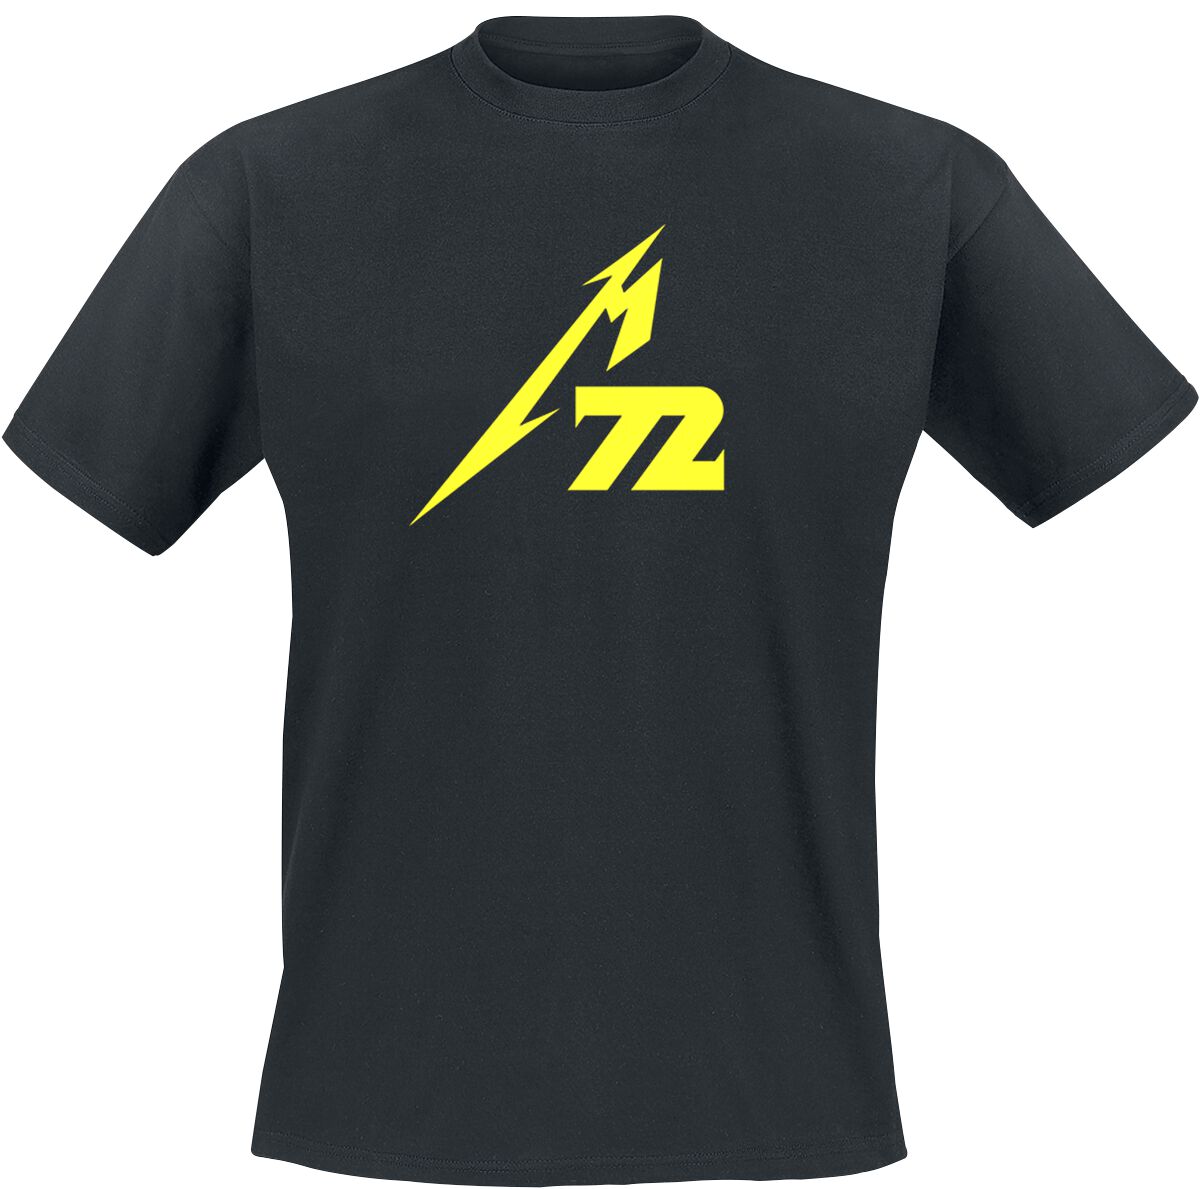 Metallica T-Shirt - Strobes (M72) - M bis 5XL - für Männer - Größe L - schwarz  - Lizenziertes Merchandise!